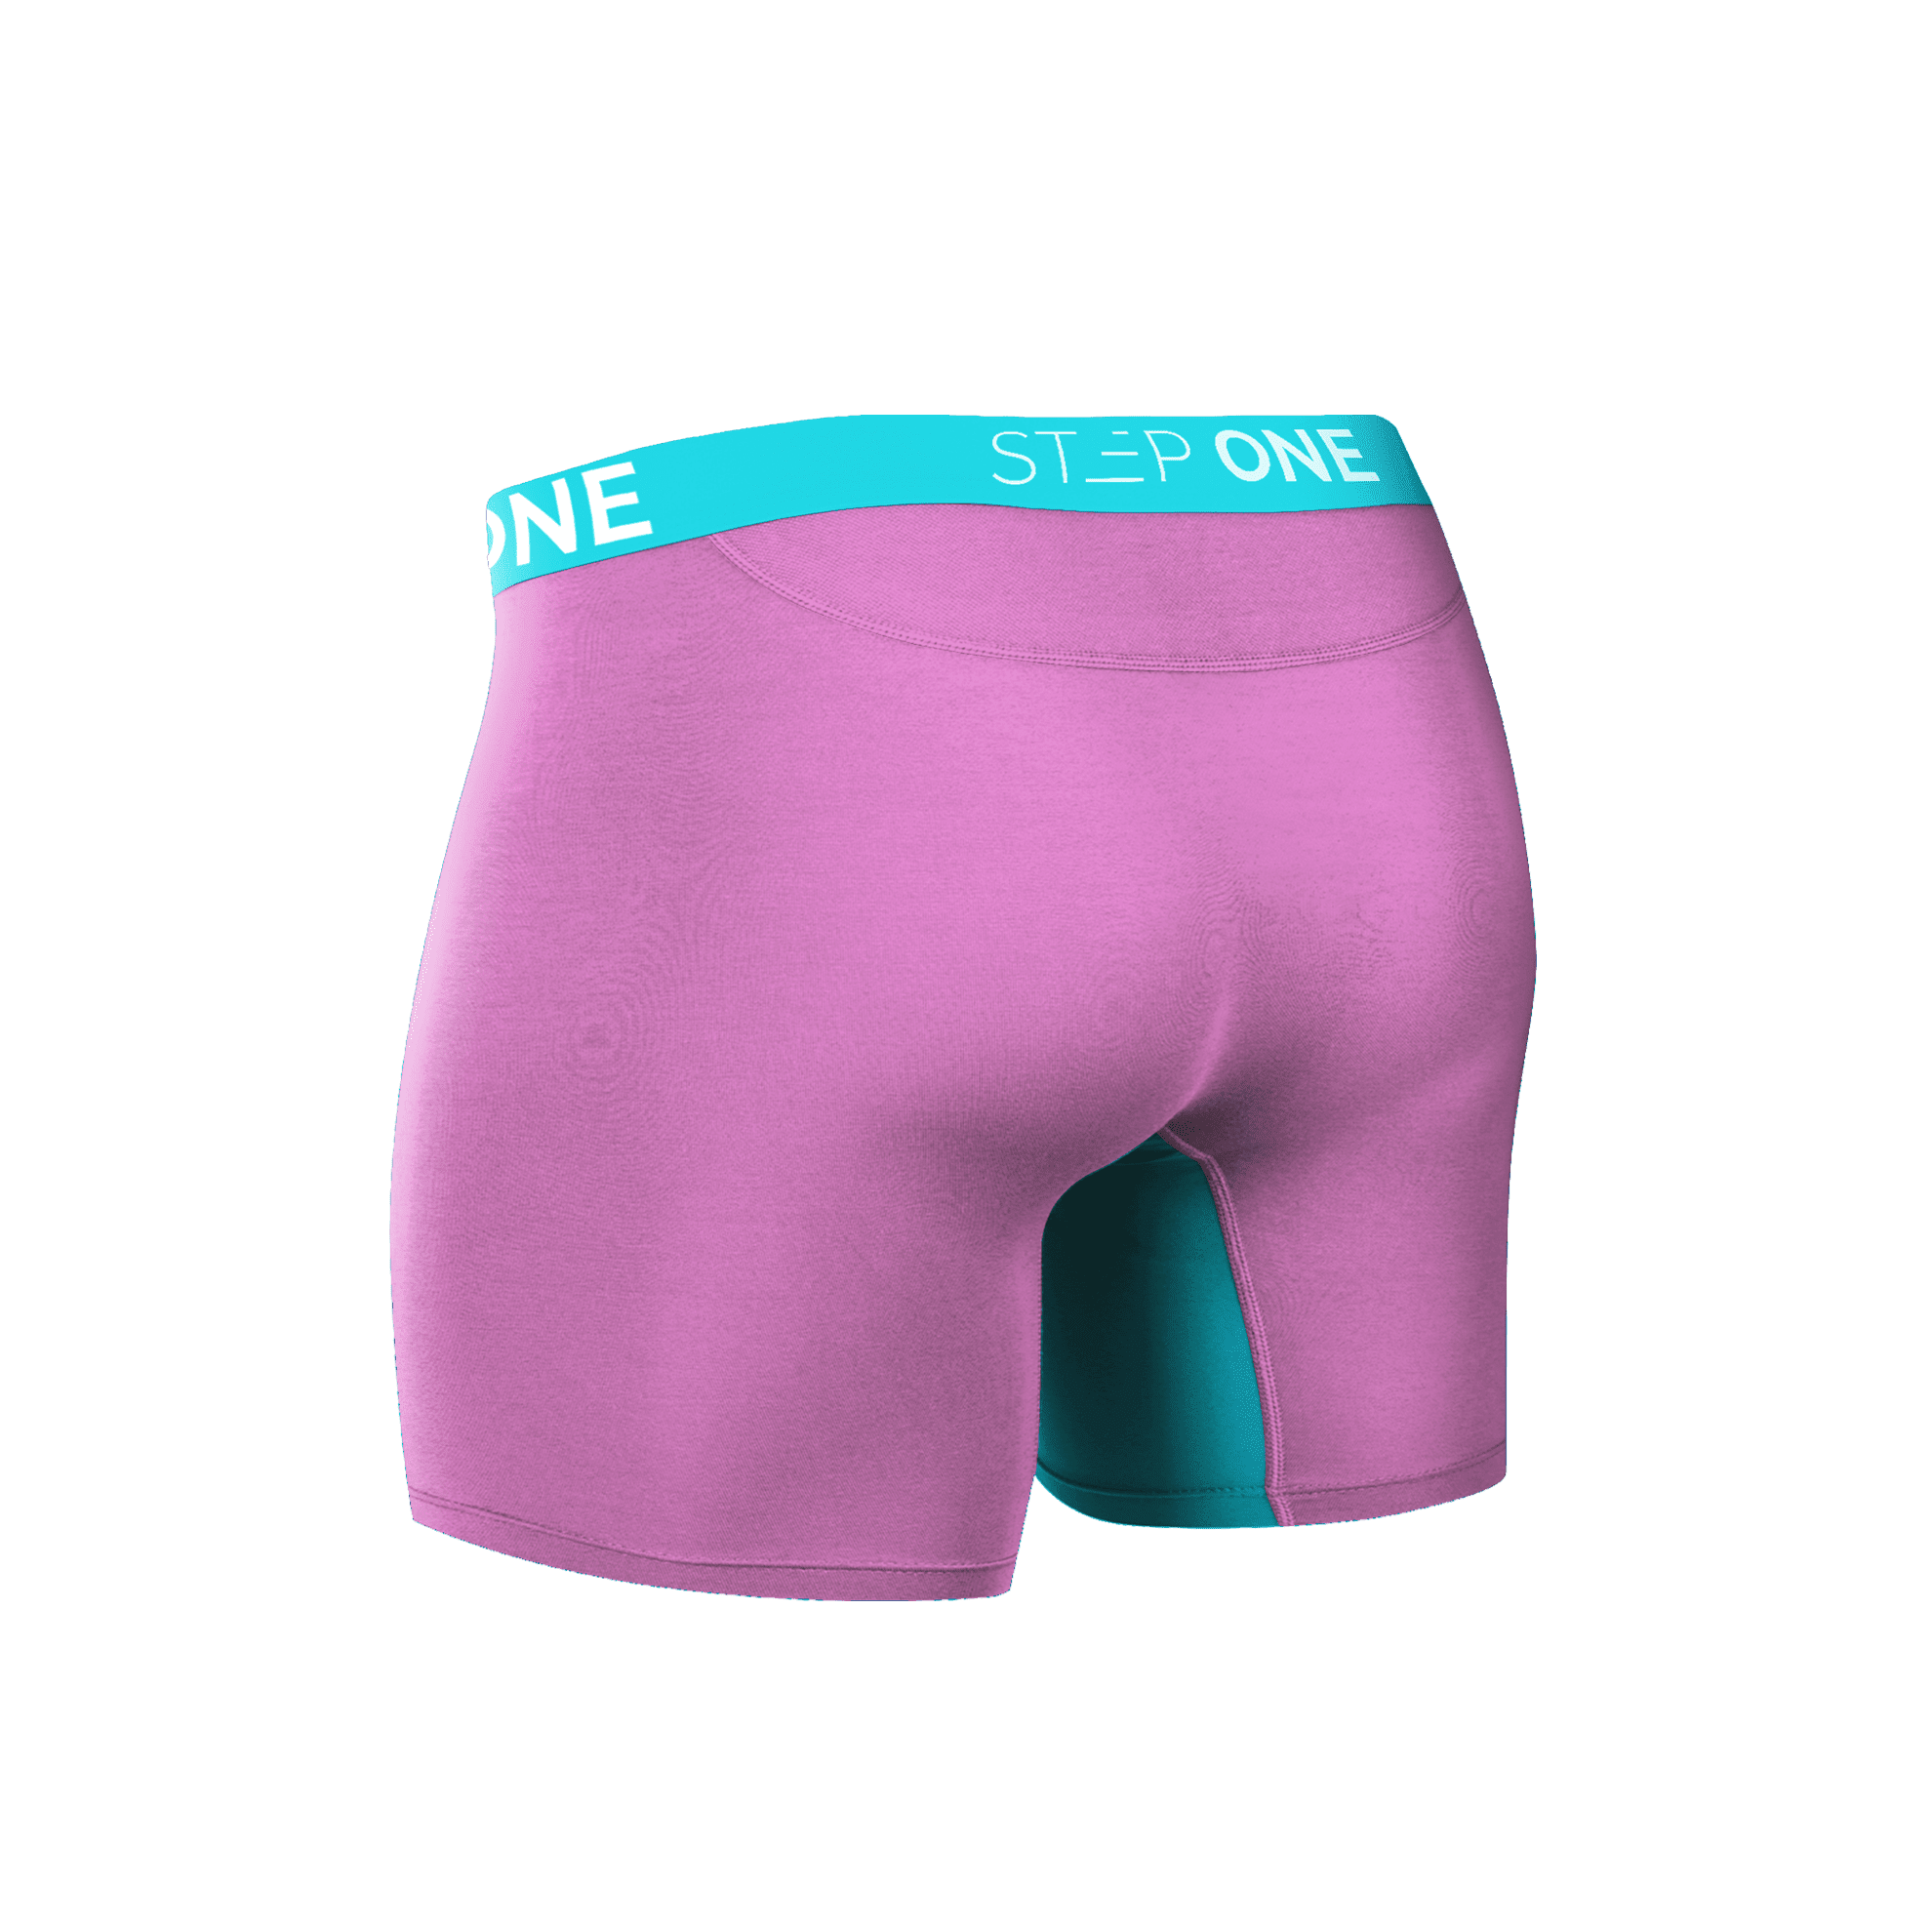 Mens Bamboo Underwear Online in Australia